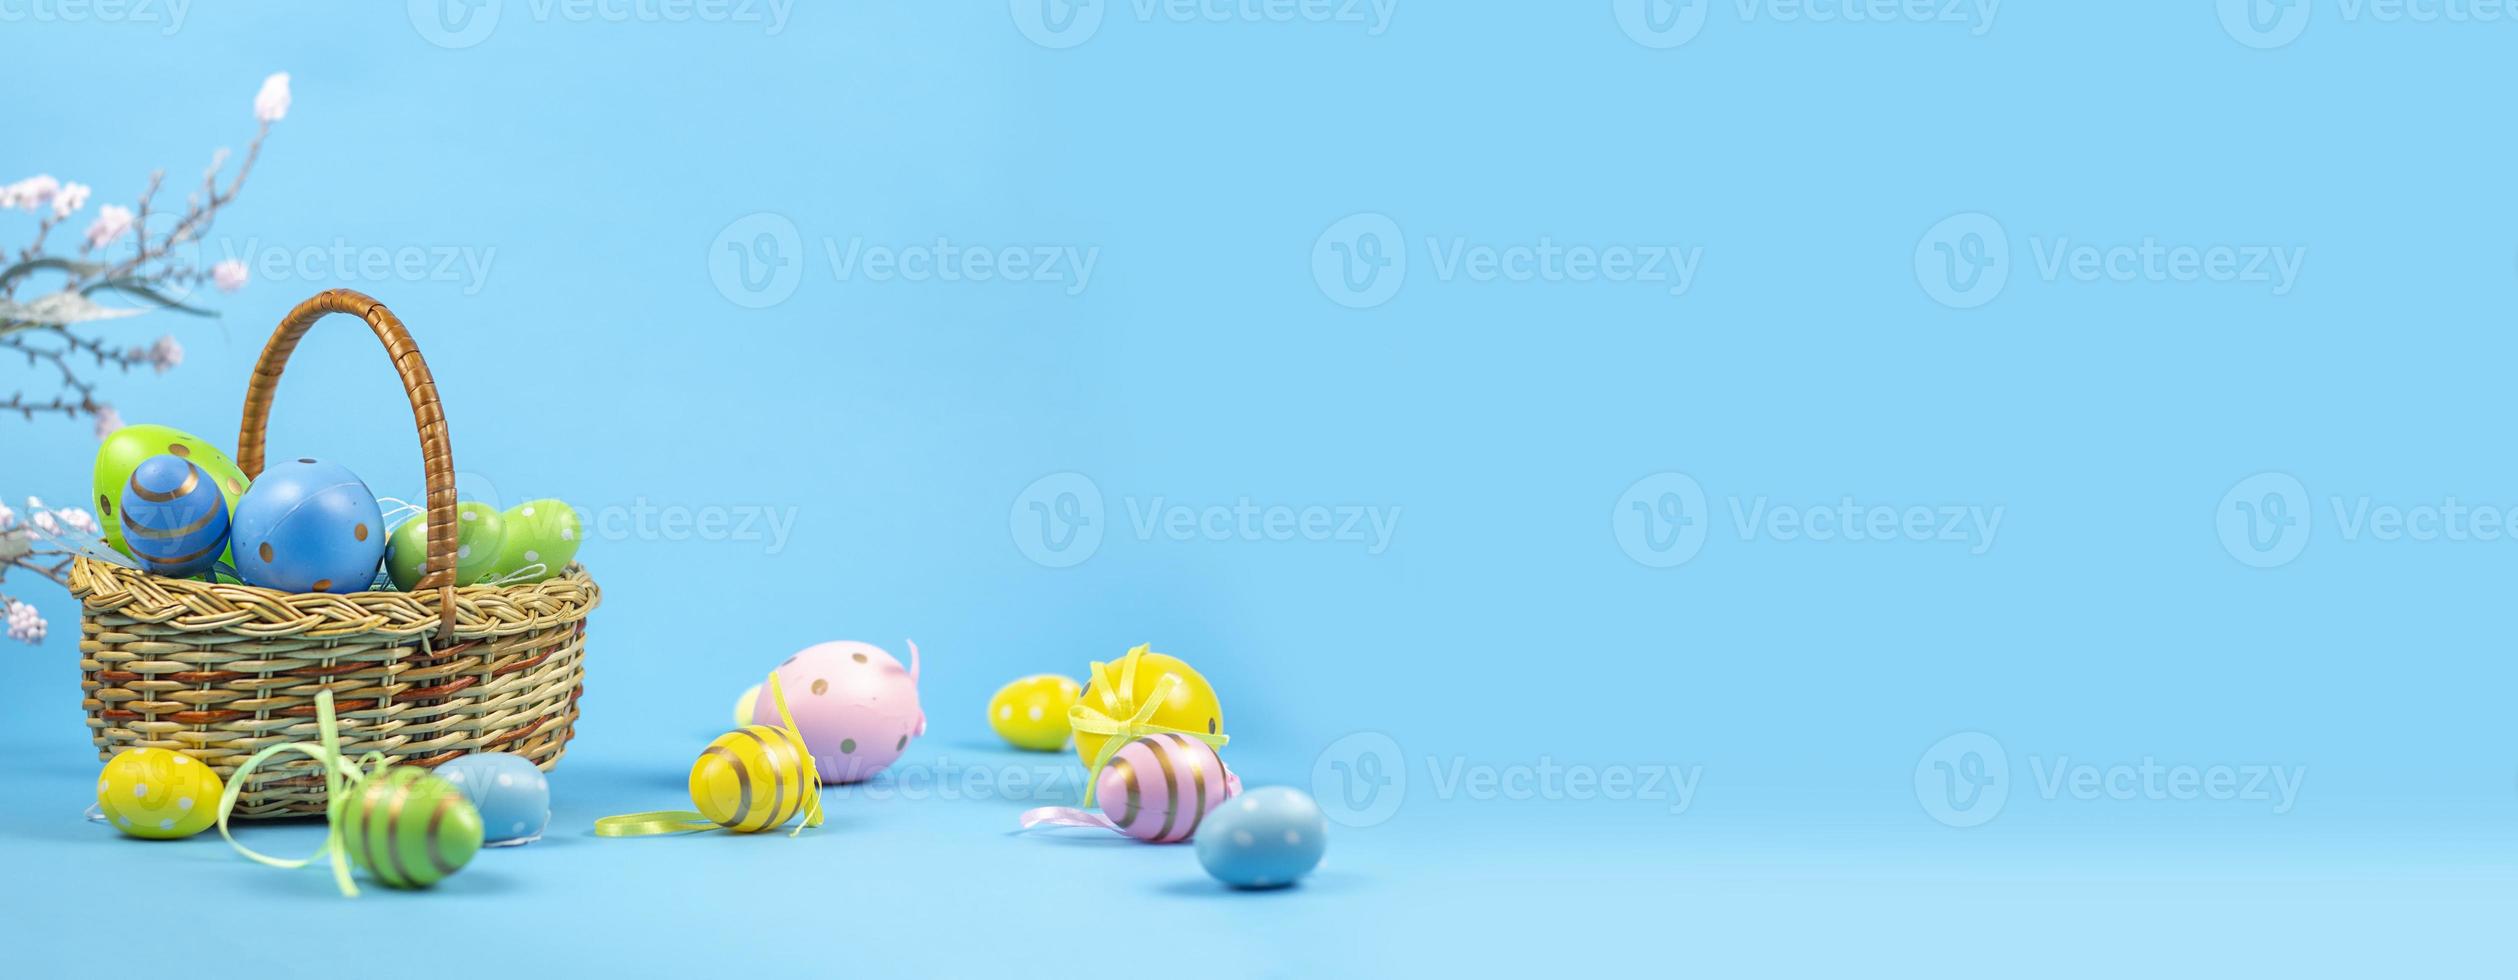 fundo de páscoa. ovos de Páscoa. cartão de feliz páscoa. ovos de páscoa multicoloridos. Páscoa. bandeira. espaço de cópia foto